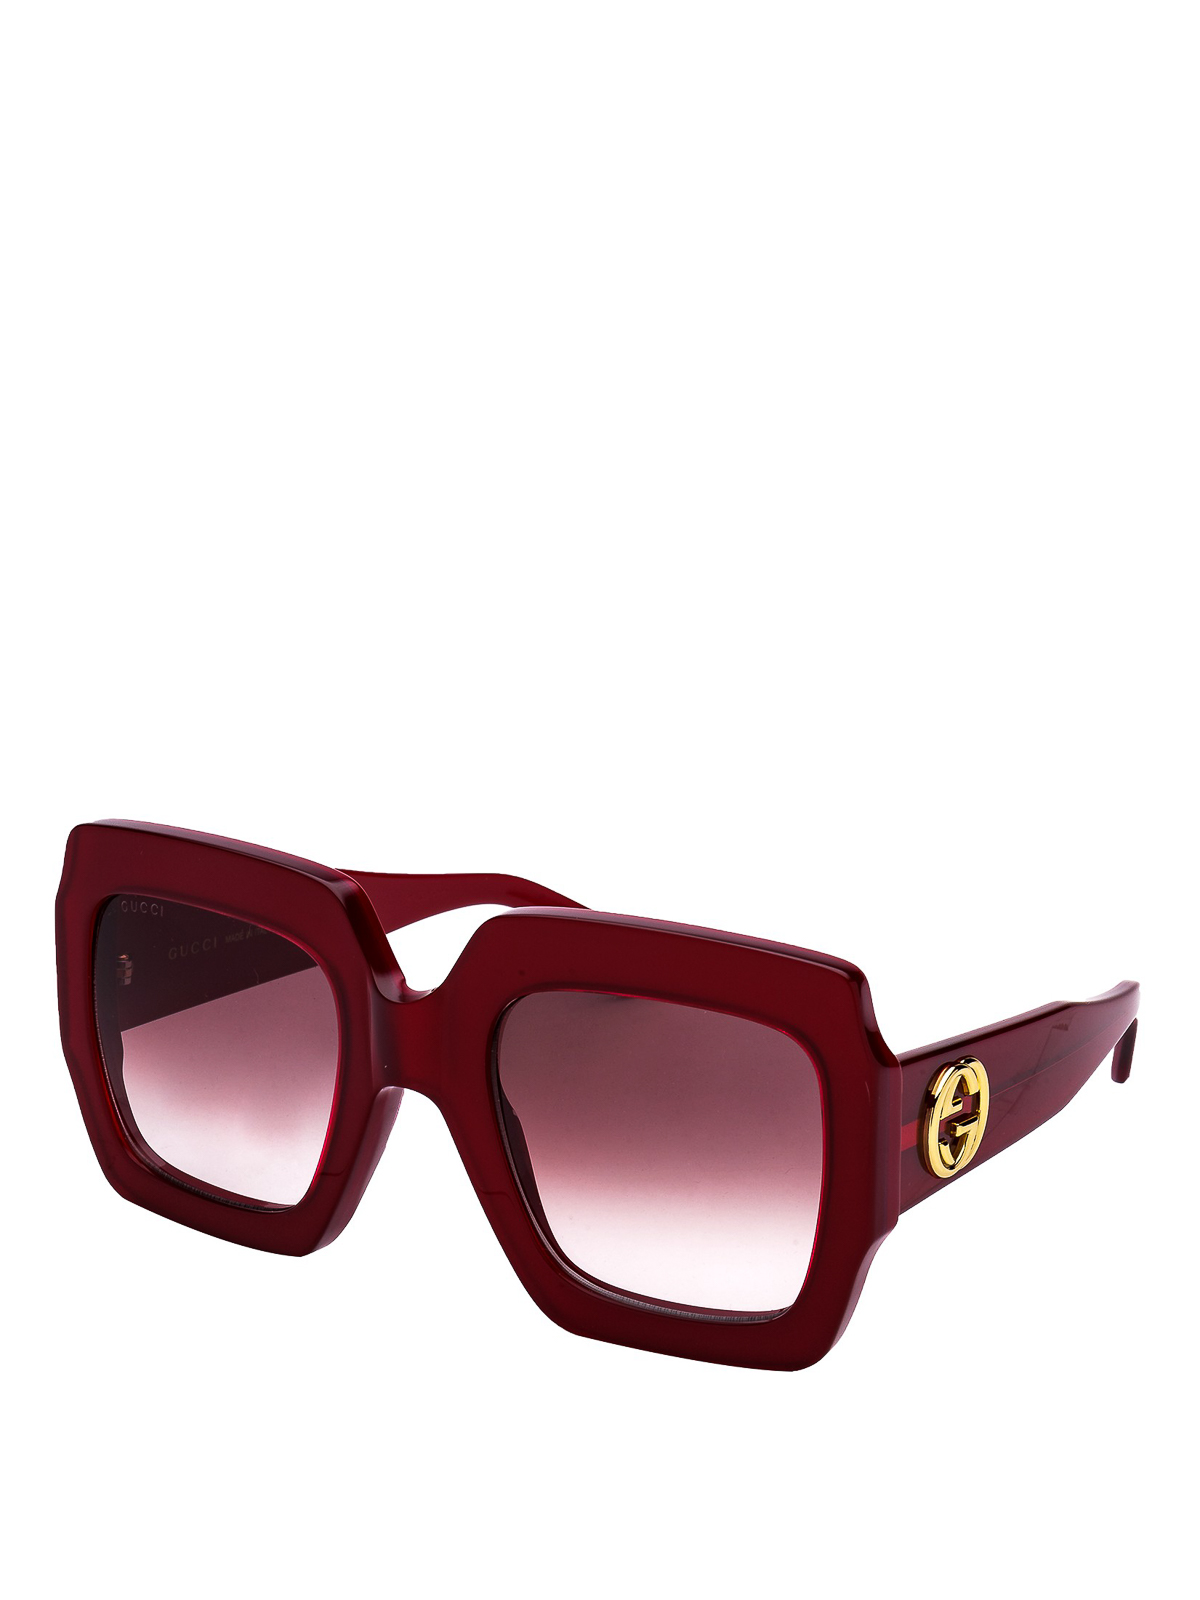 gucci red square sunglasses